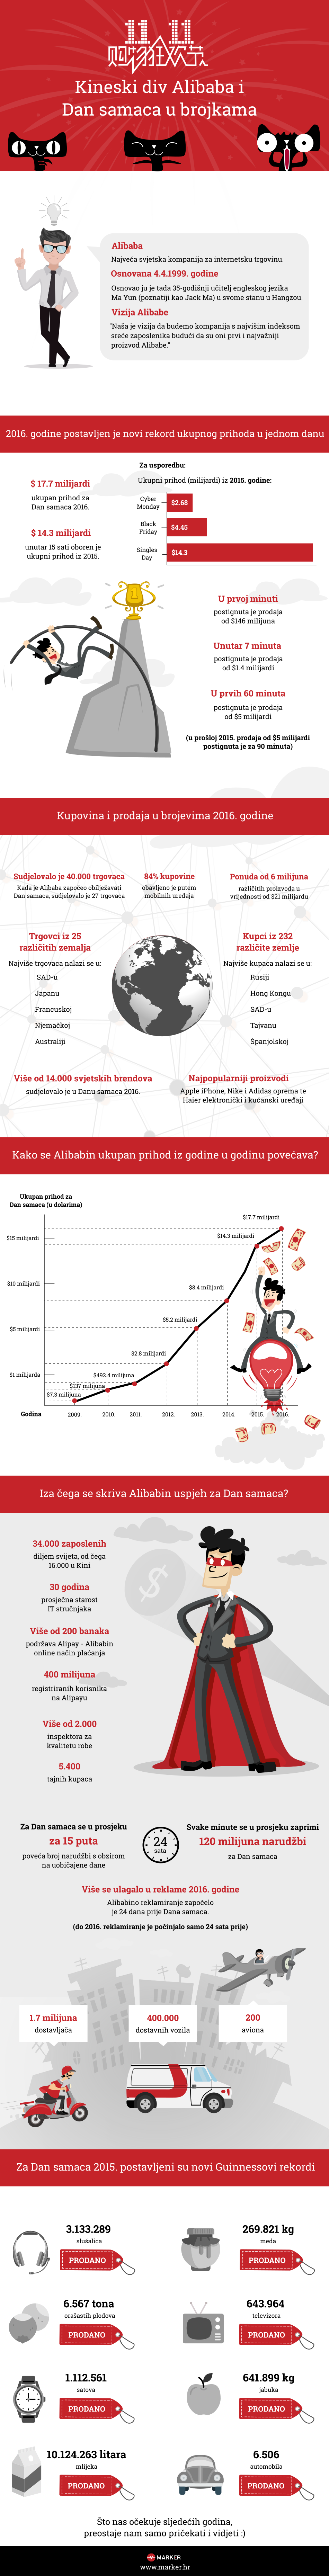 Alibaba i Dan samaca